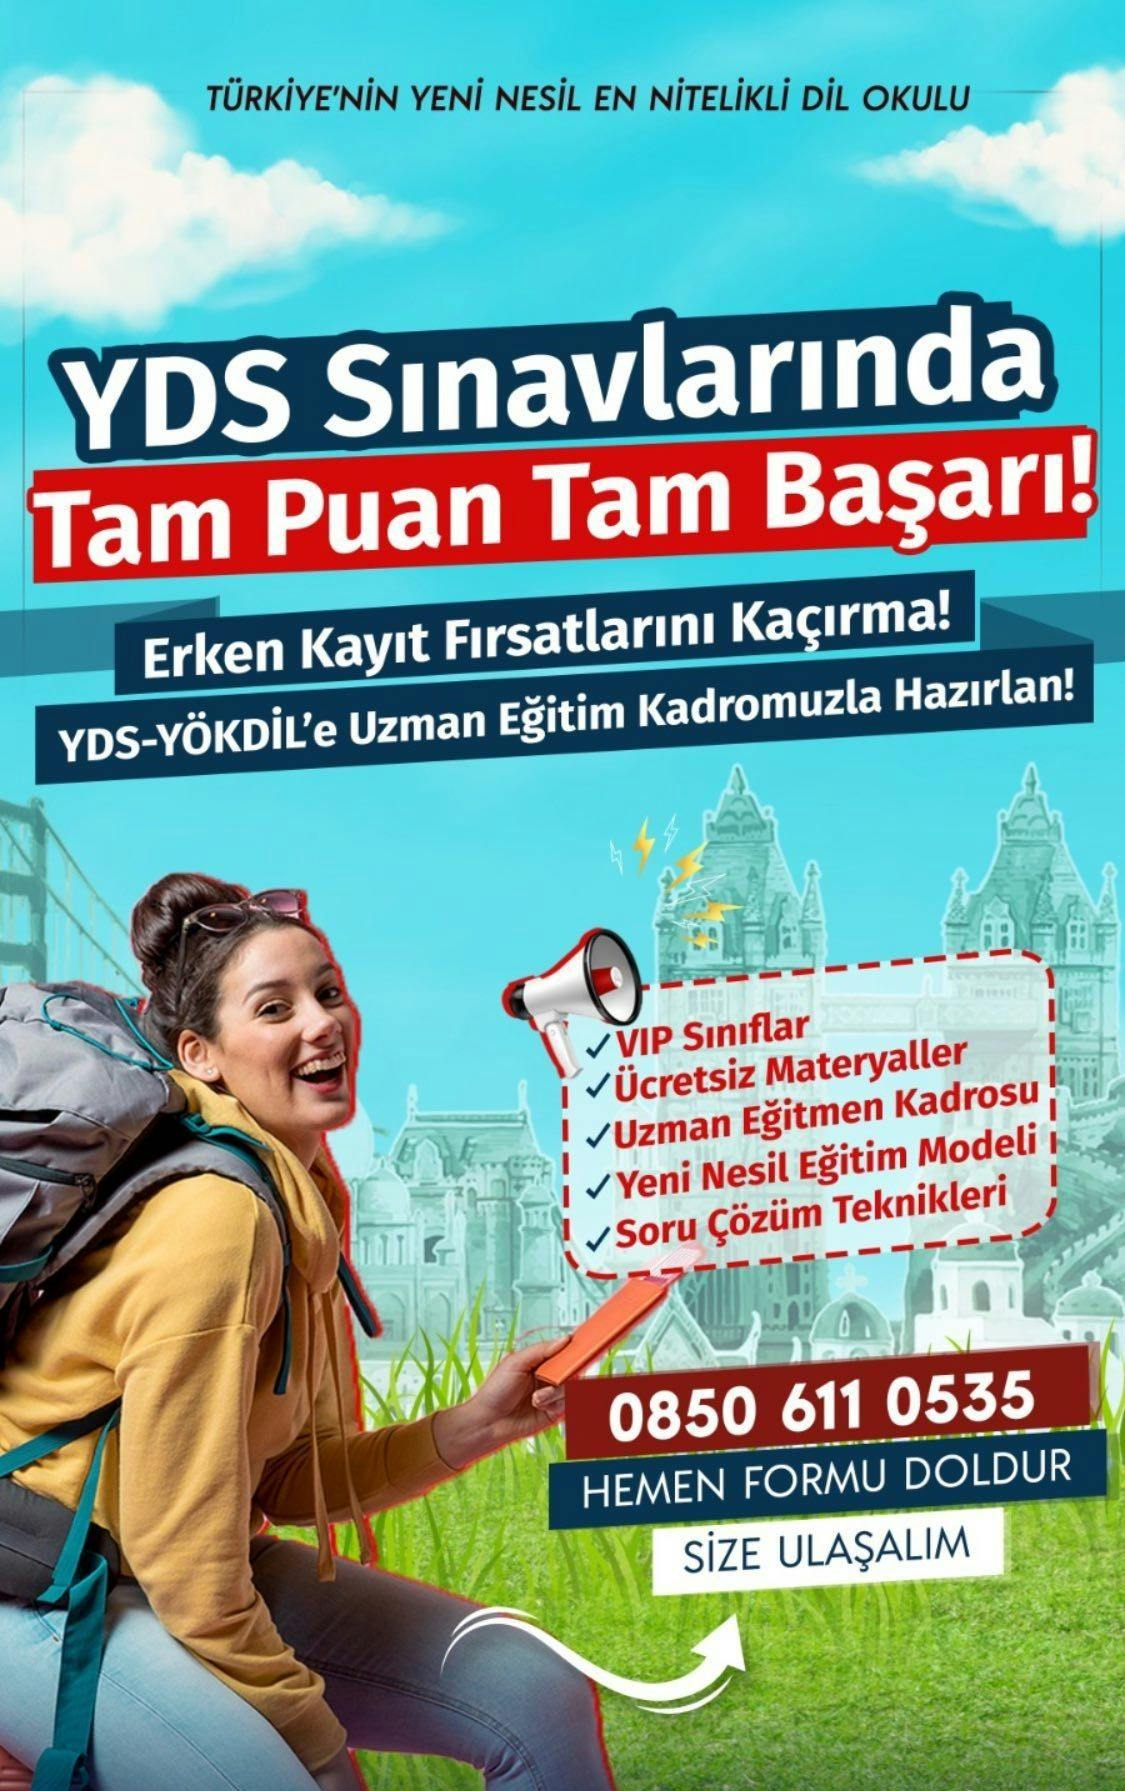 Türkiye'nin yeni nesil en nitelikli yds dil okulu